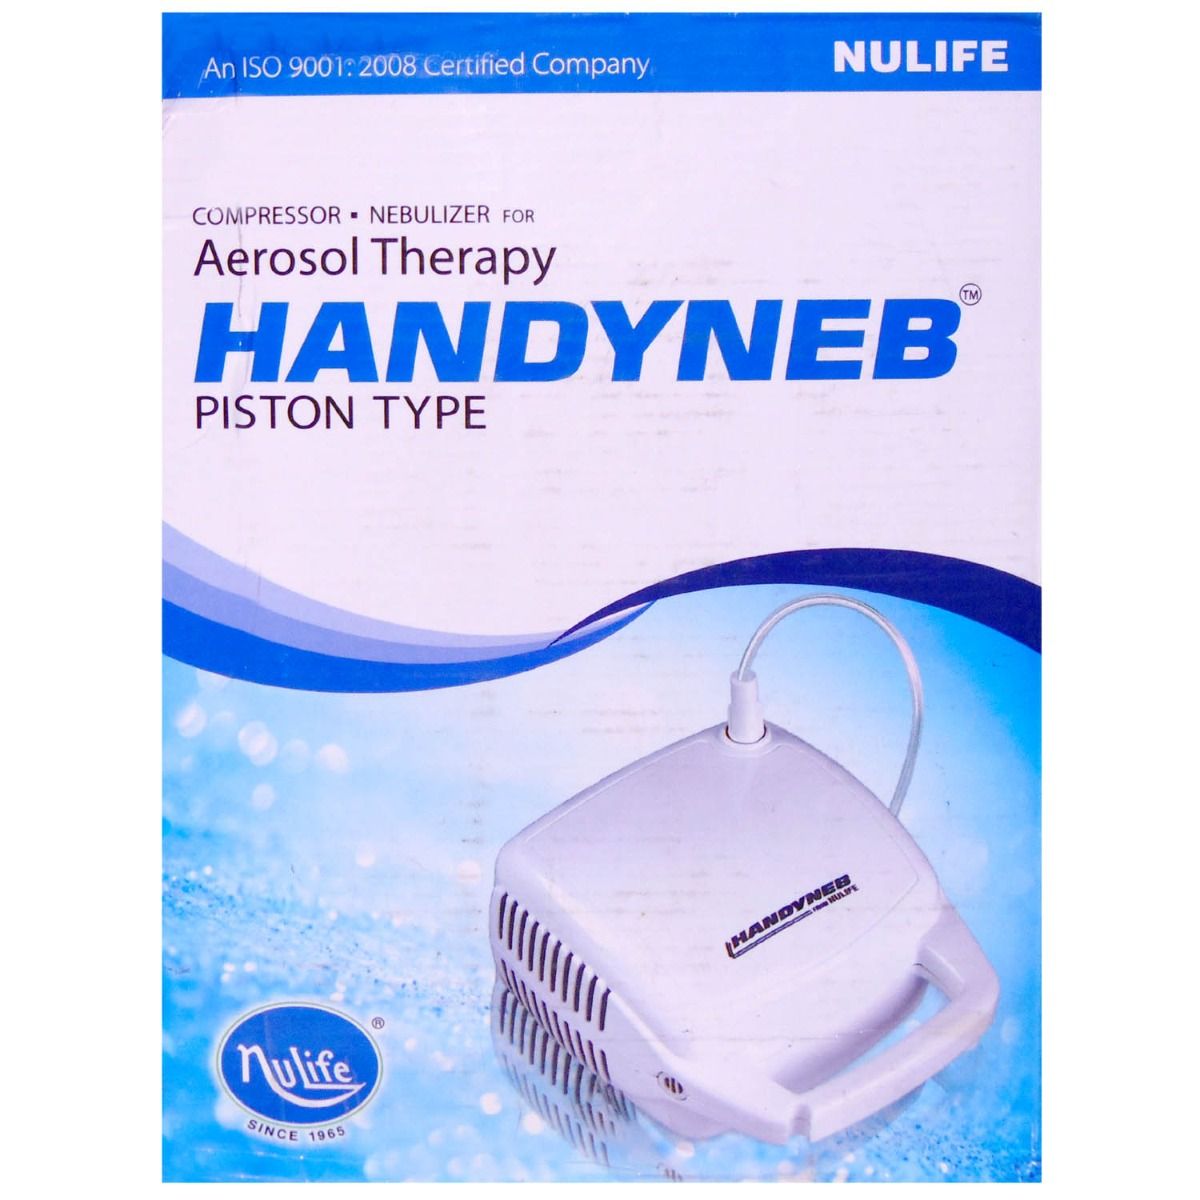 Buy Nulife Handyneb Compressor Nebulizer Online